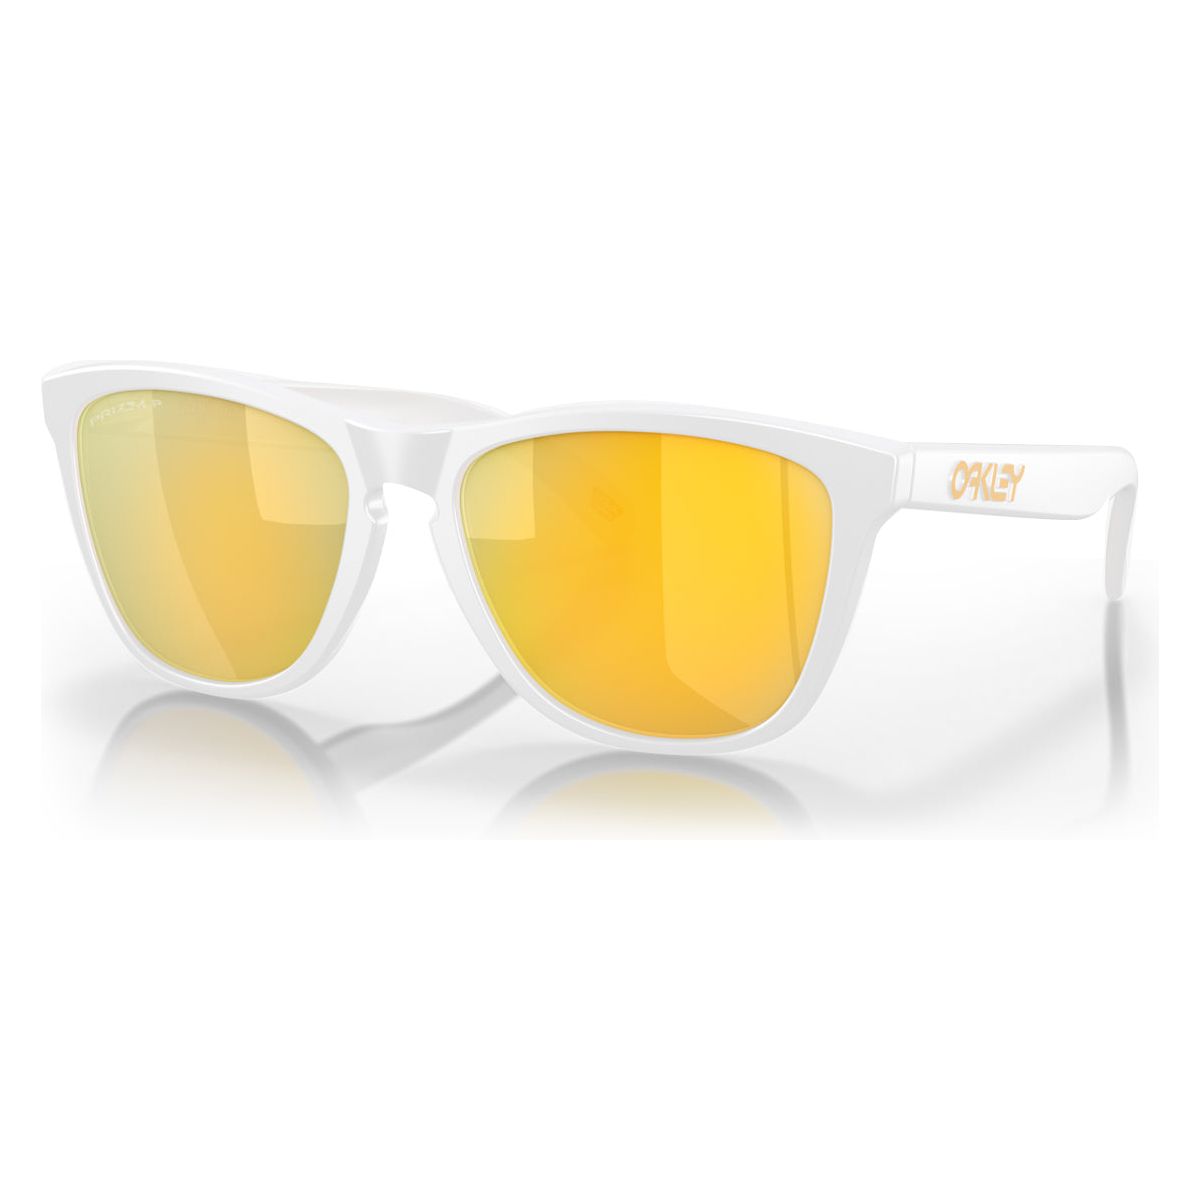 Oakley Frogskins (Low Bridge Fit) Sunglasses